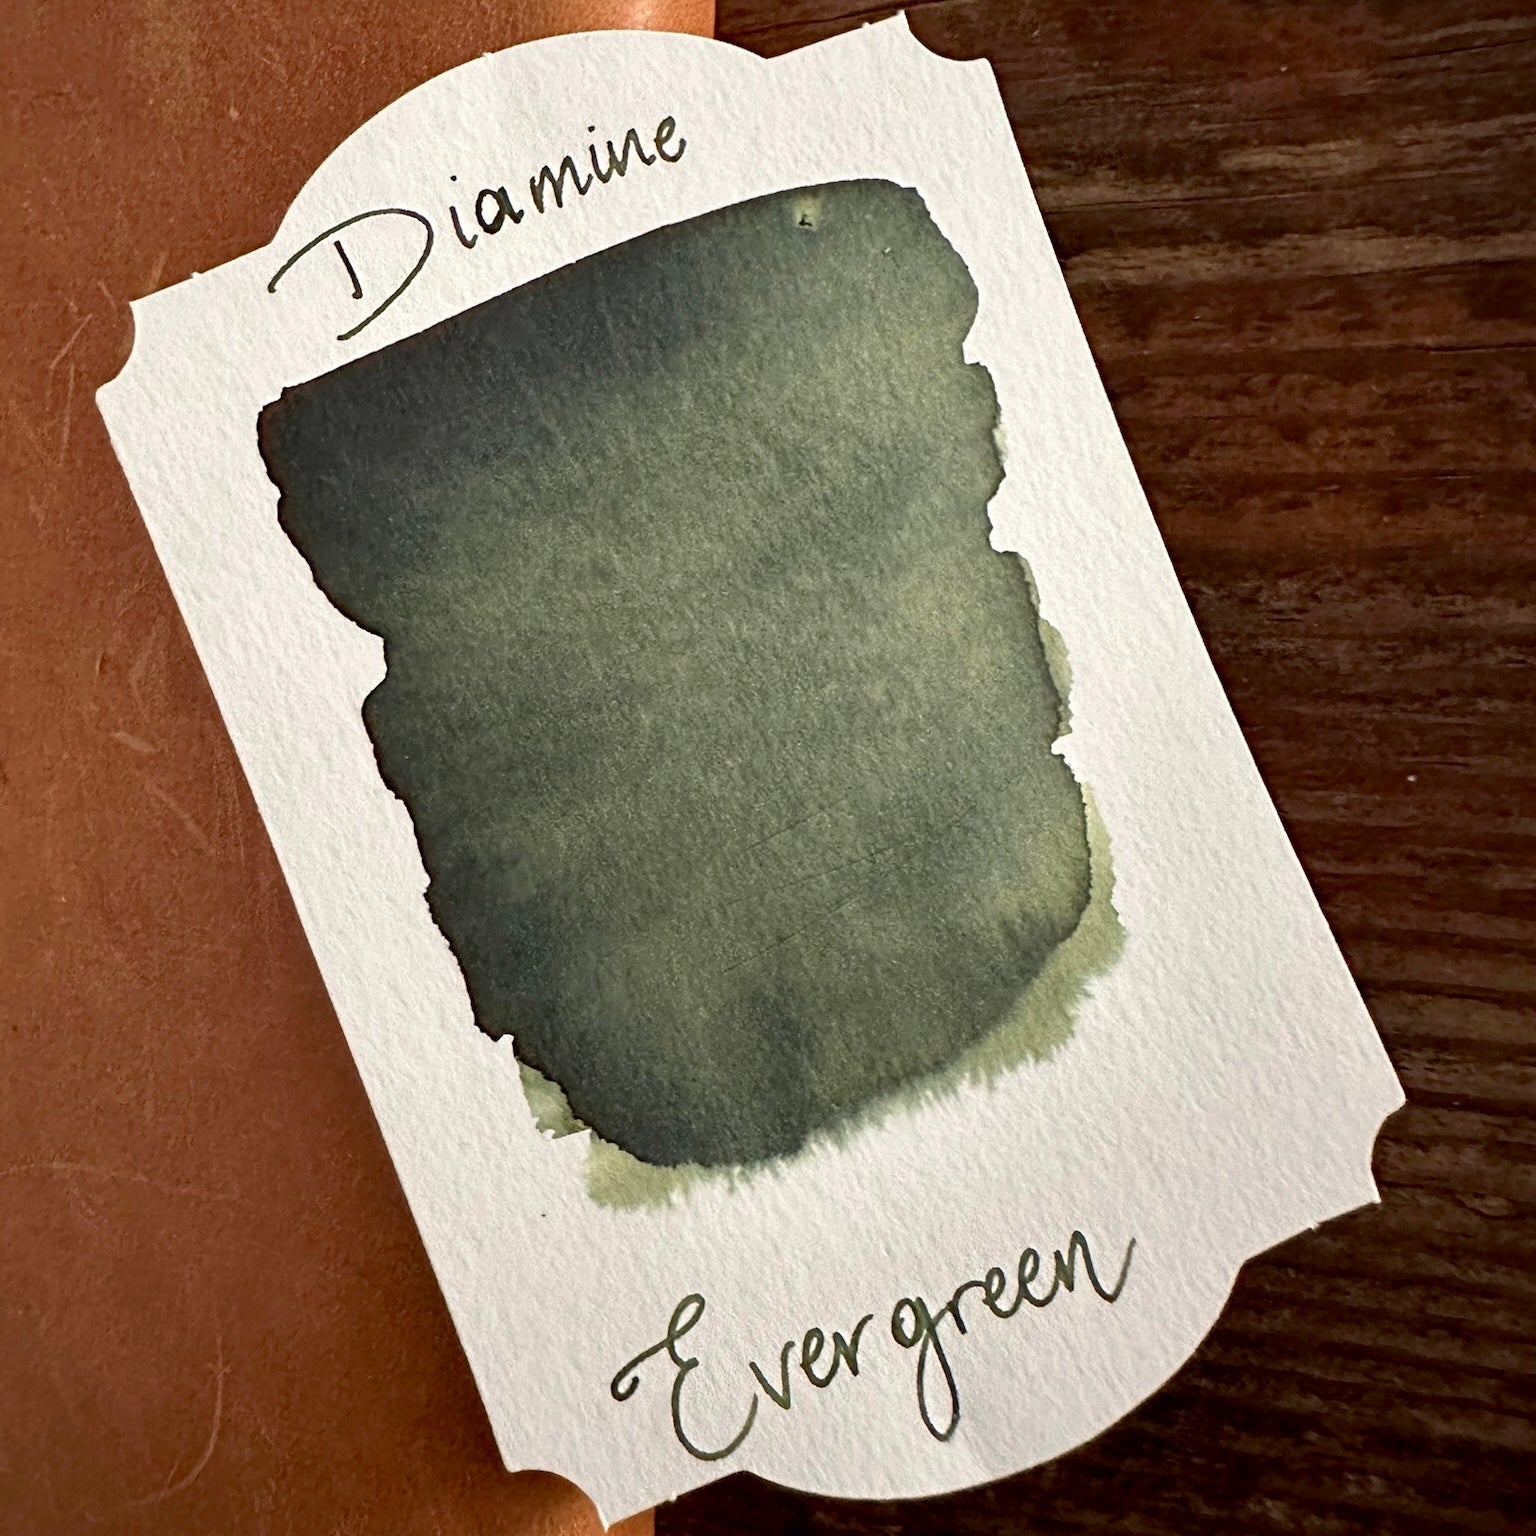 Diamine Evergreen